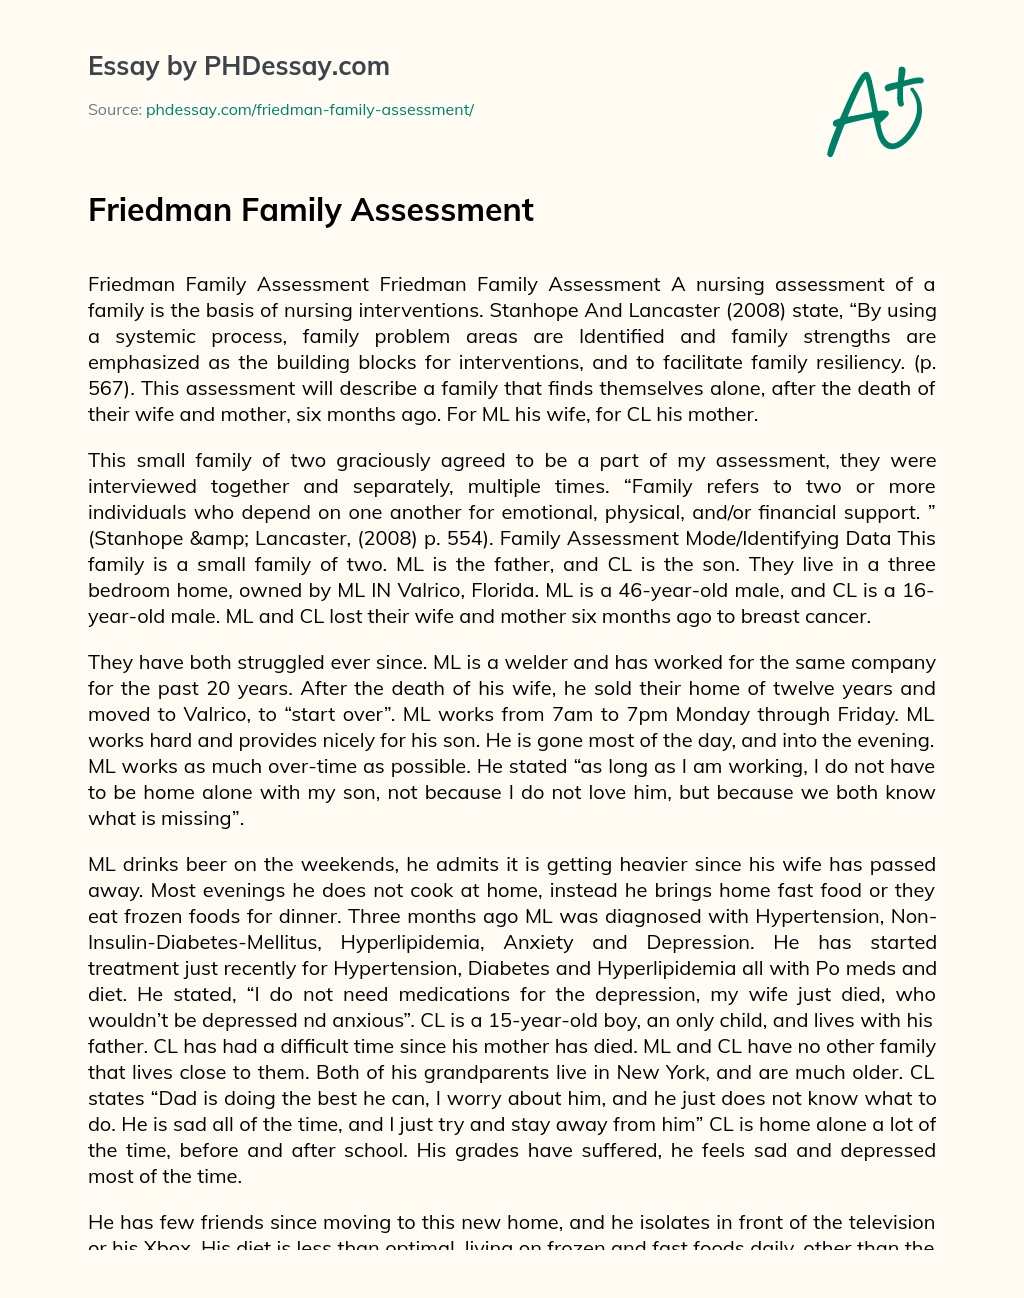 Friedman Family Assessment essay